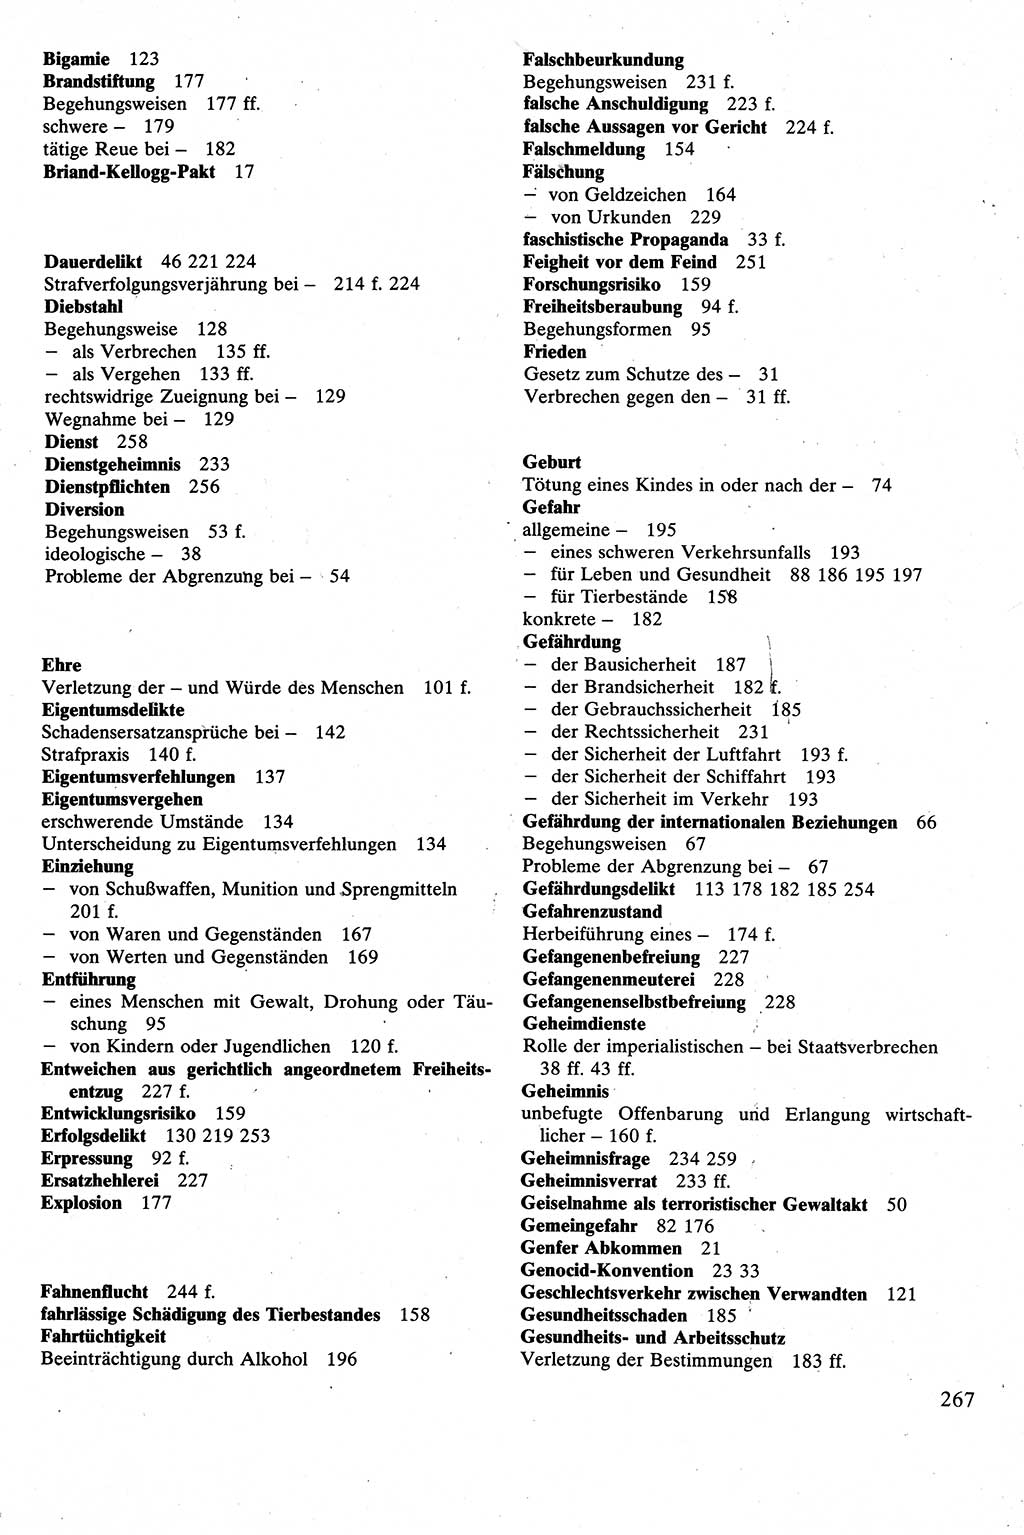 Strafrecht [Deutsche Demokratische Republik (DDR)], Besonderer Teil, Lehrbuch 1981, Seite 267 (Strafr. DDR BT Lb. 1981, S. 267)